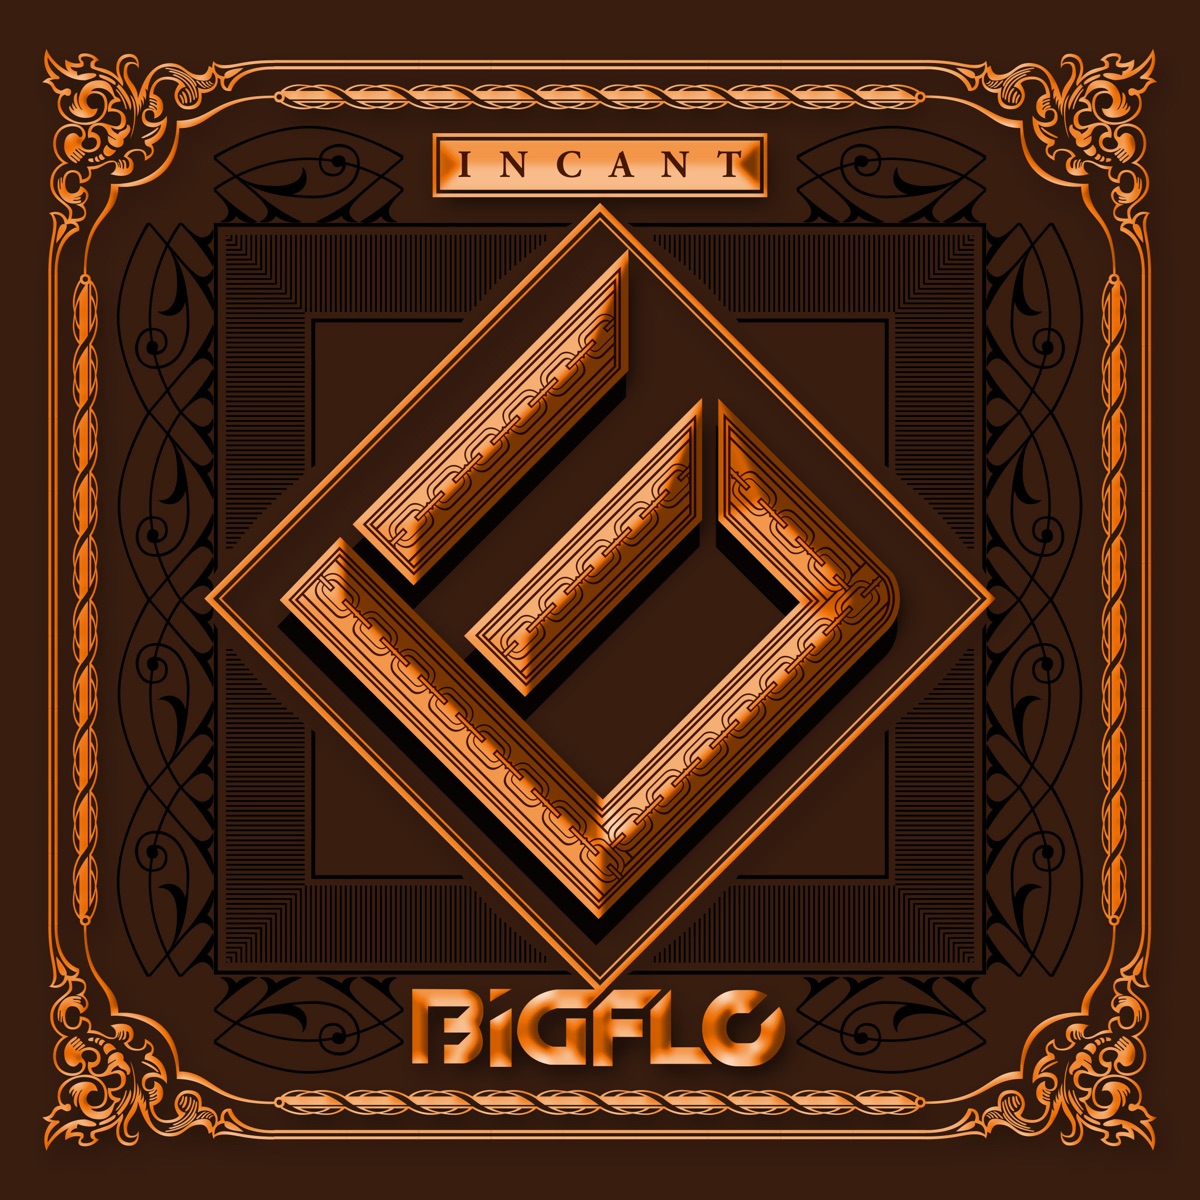 BIGFLO – Bigflo 3rd Mini Album ‘Incant’